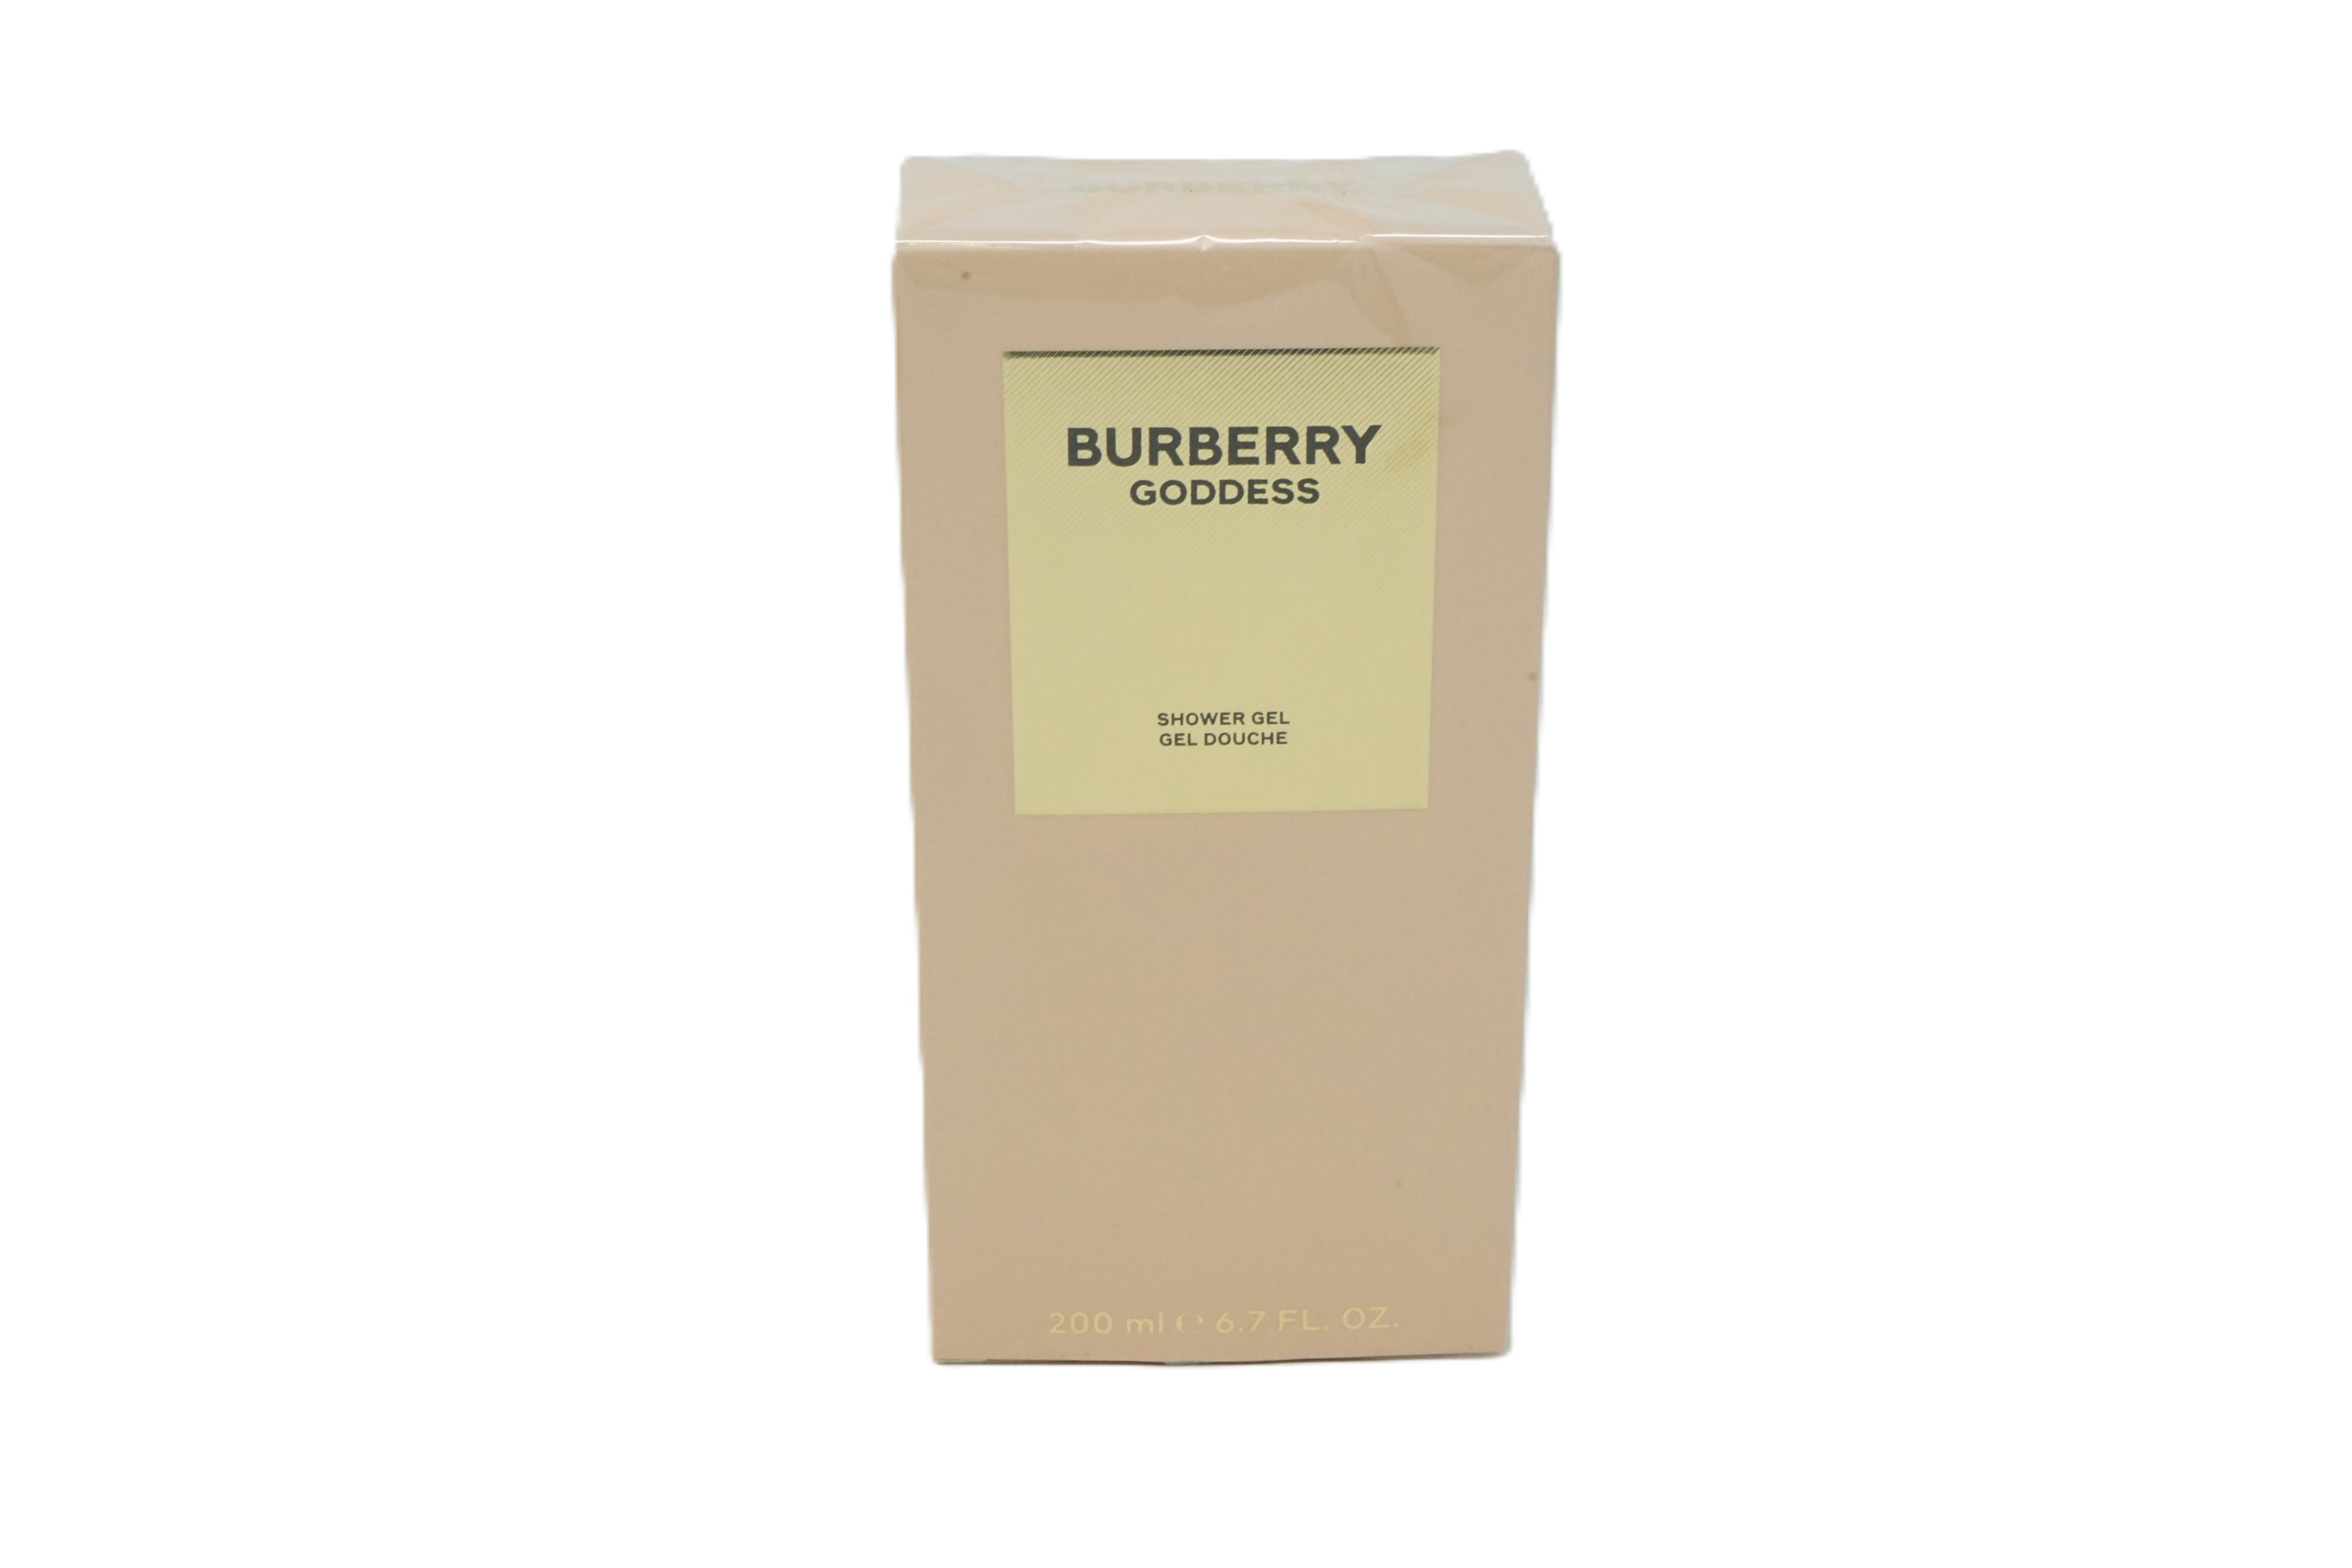 Burberry Goddess Shower Gel 200 ml